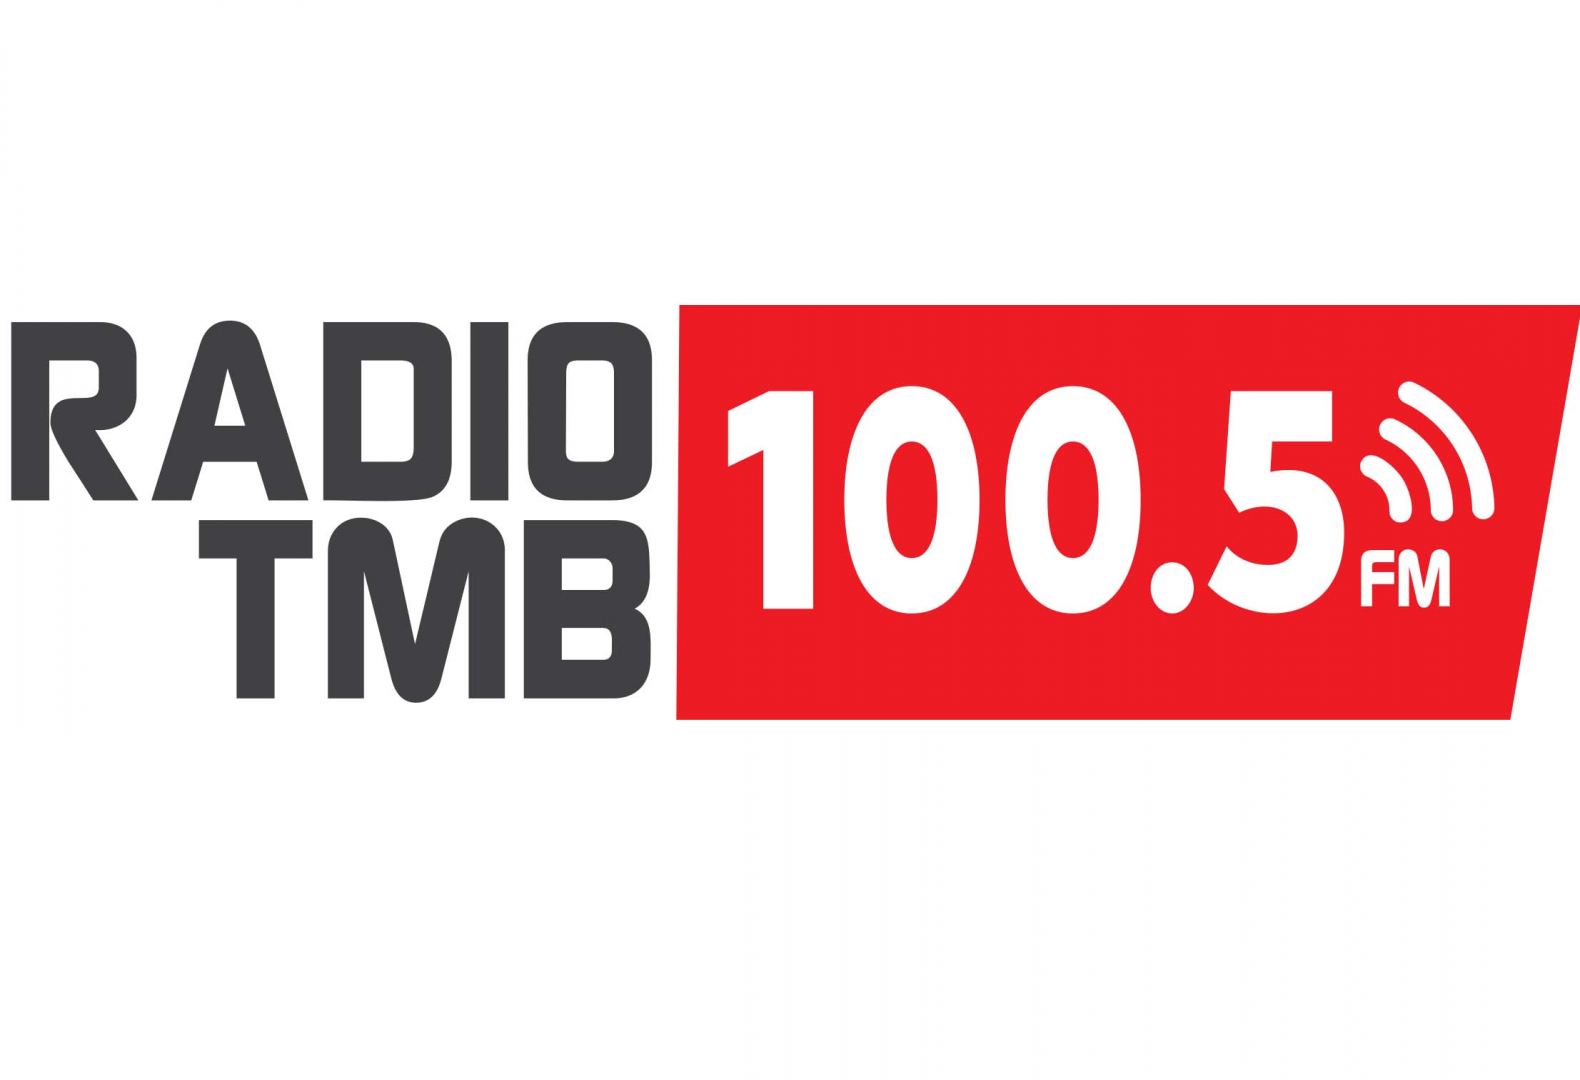 Radio TMB 100.5 FM стало информационным партнером фестиваля TEKNOFEST